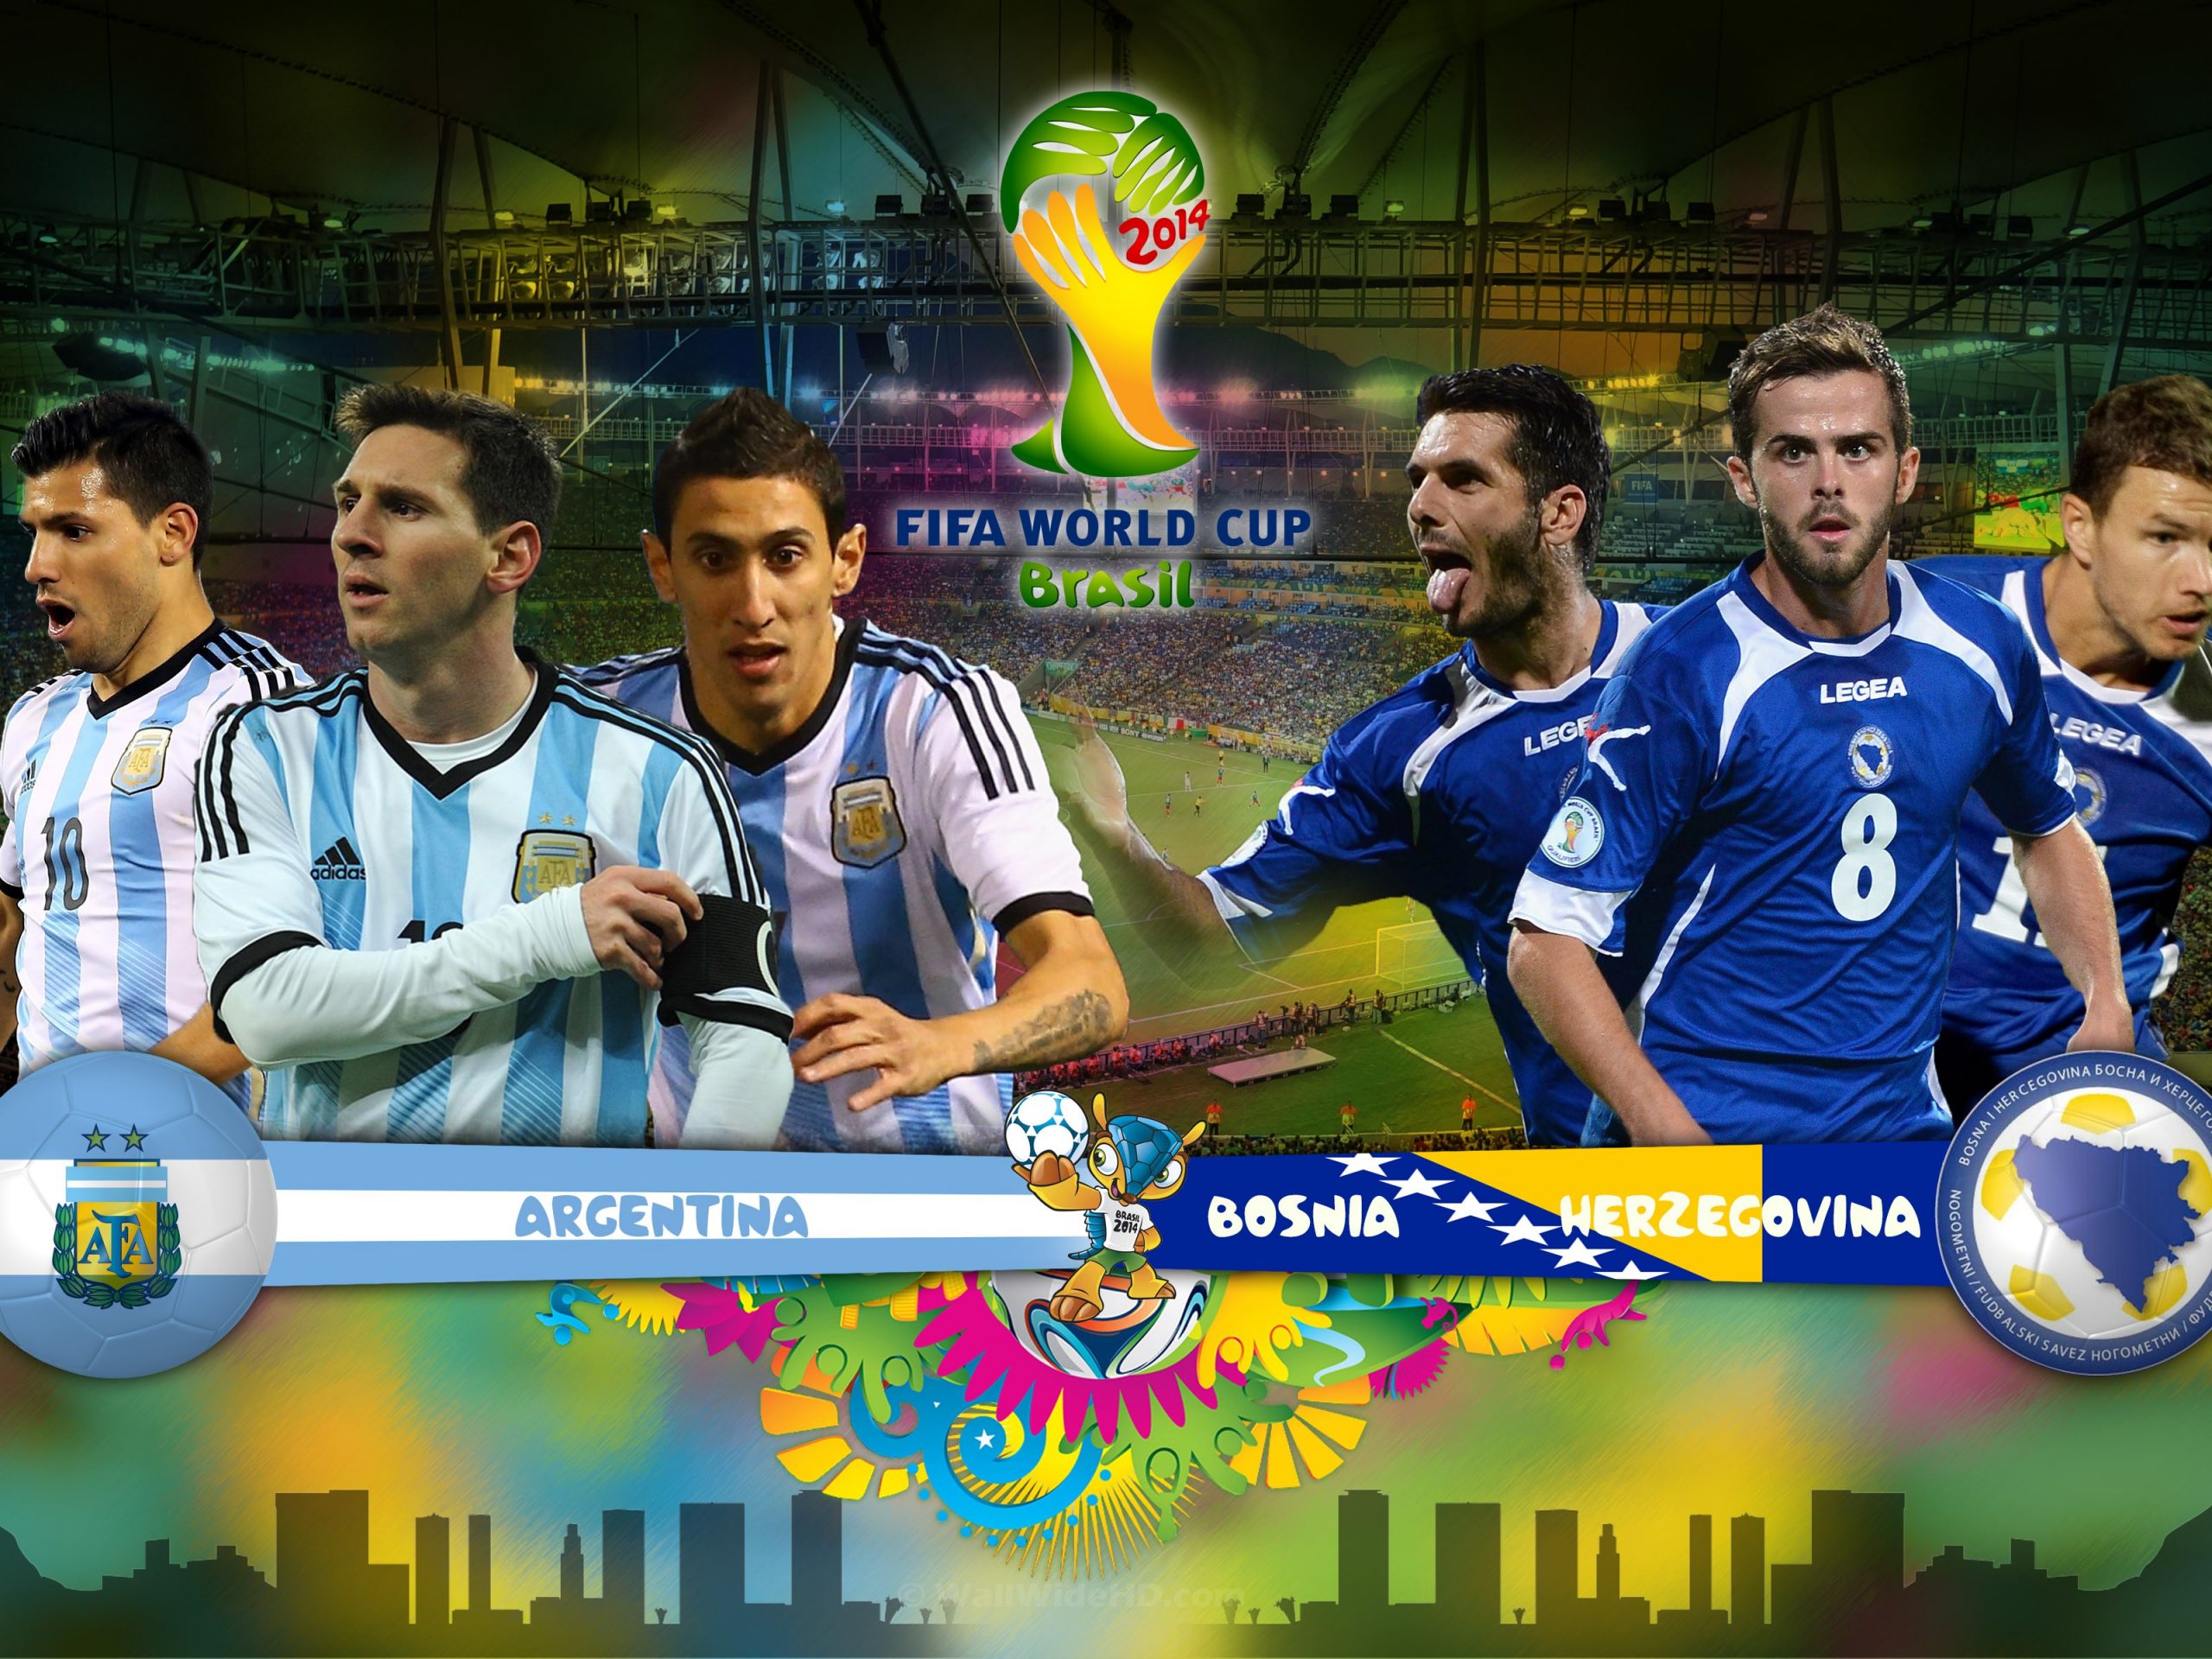 Argentina vs Bosnia - Brasil 2014